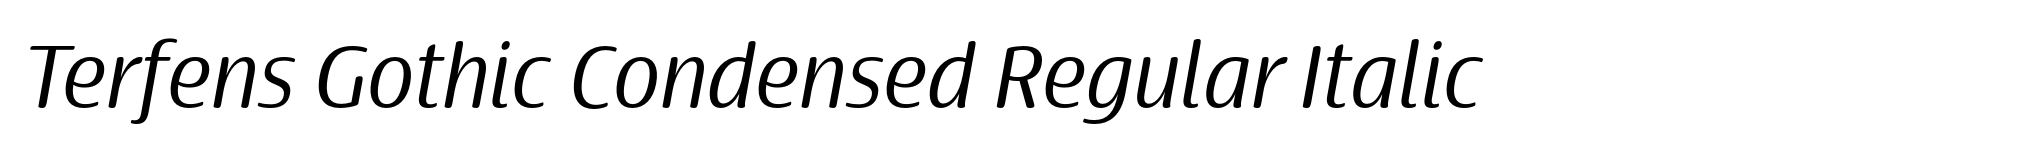 Terfens Gothic Condensed Regular Italic image